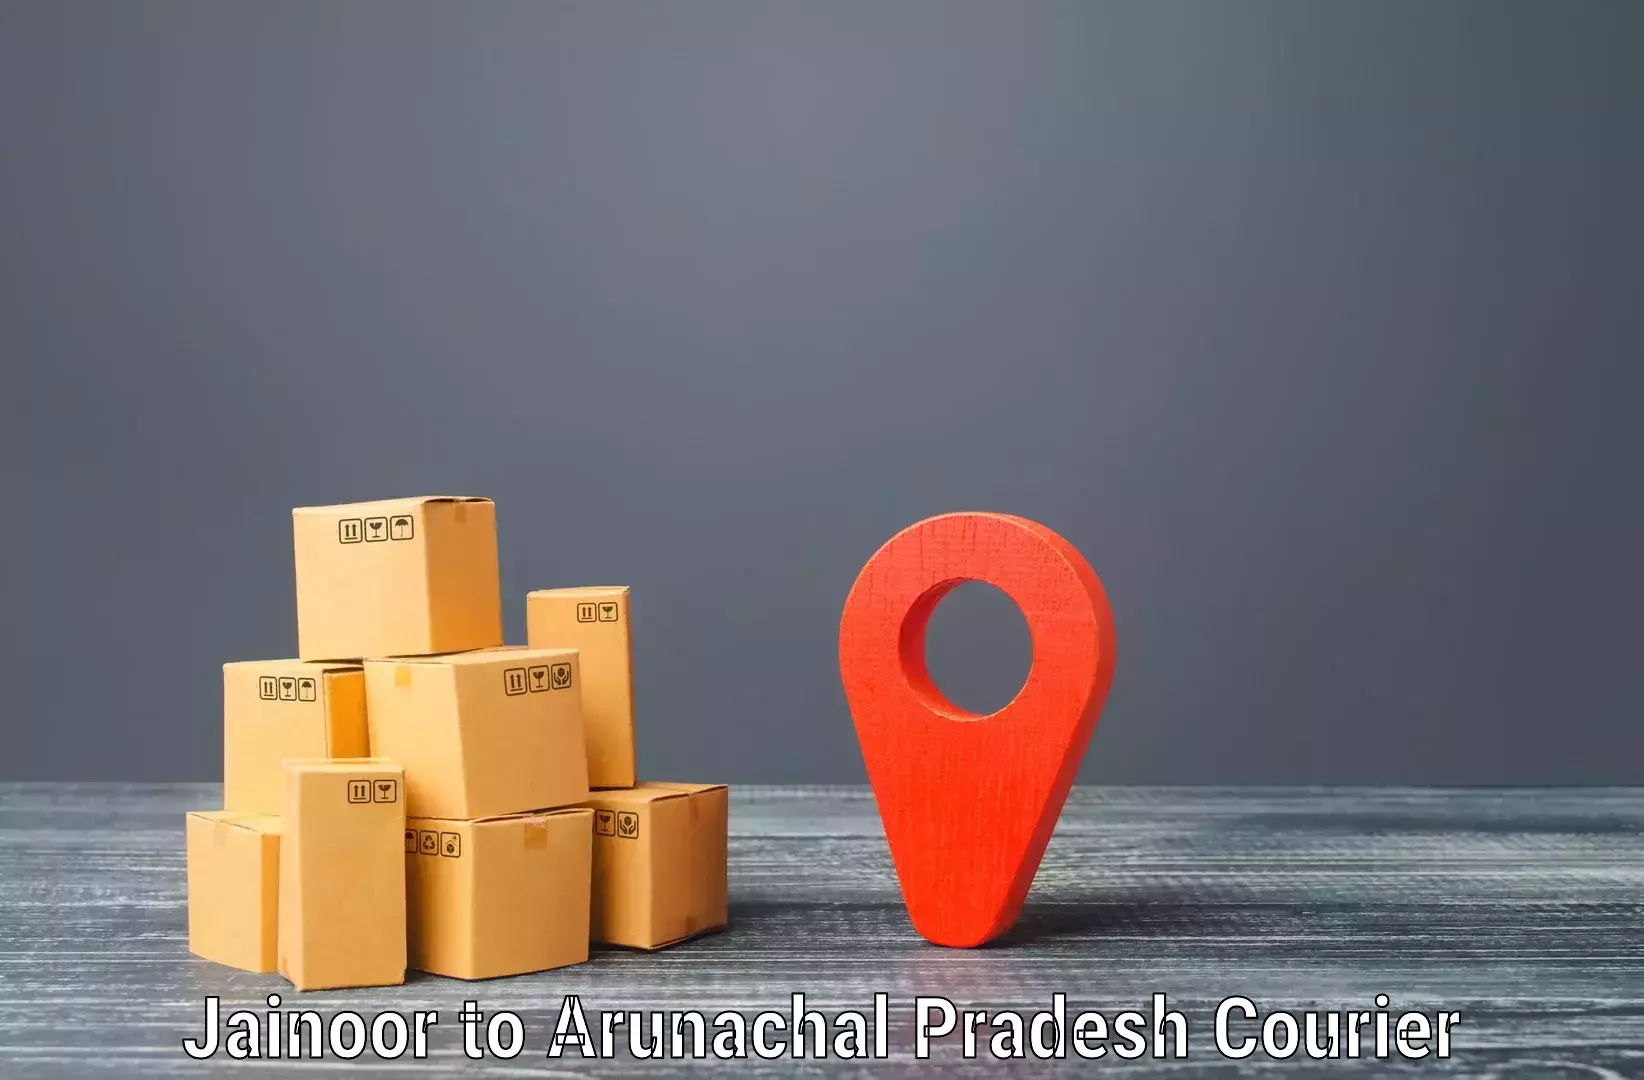 Package delivery network Jainoor to Upper Subansiri